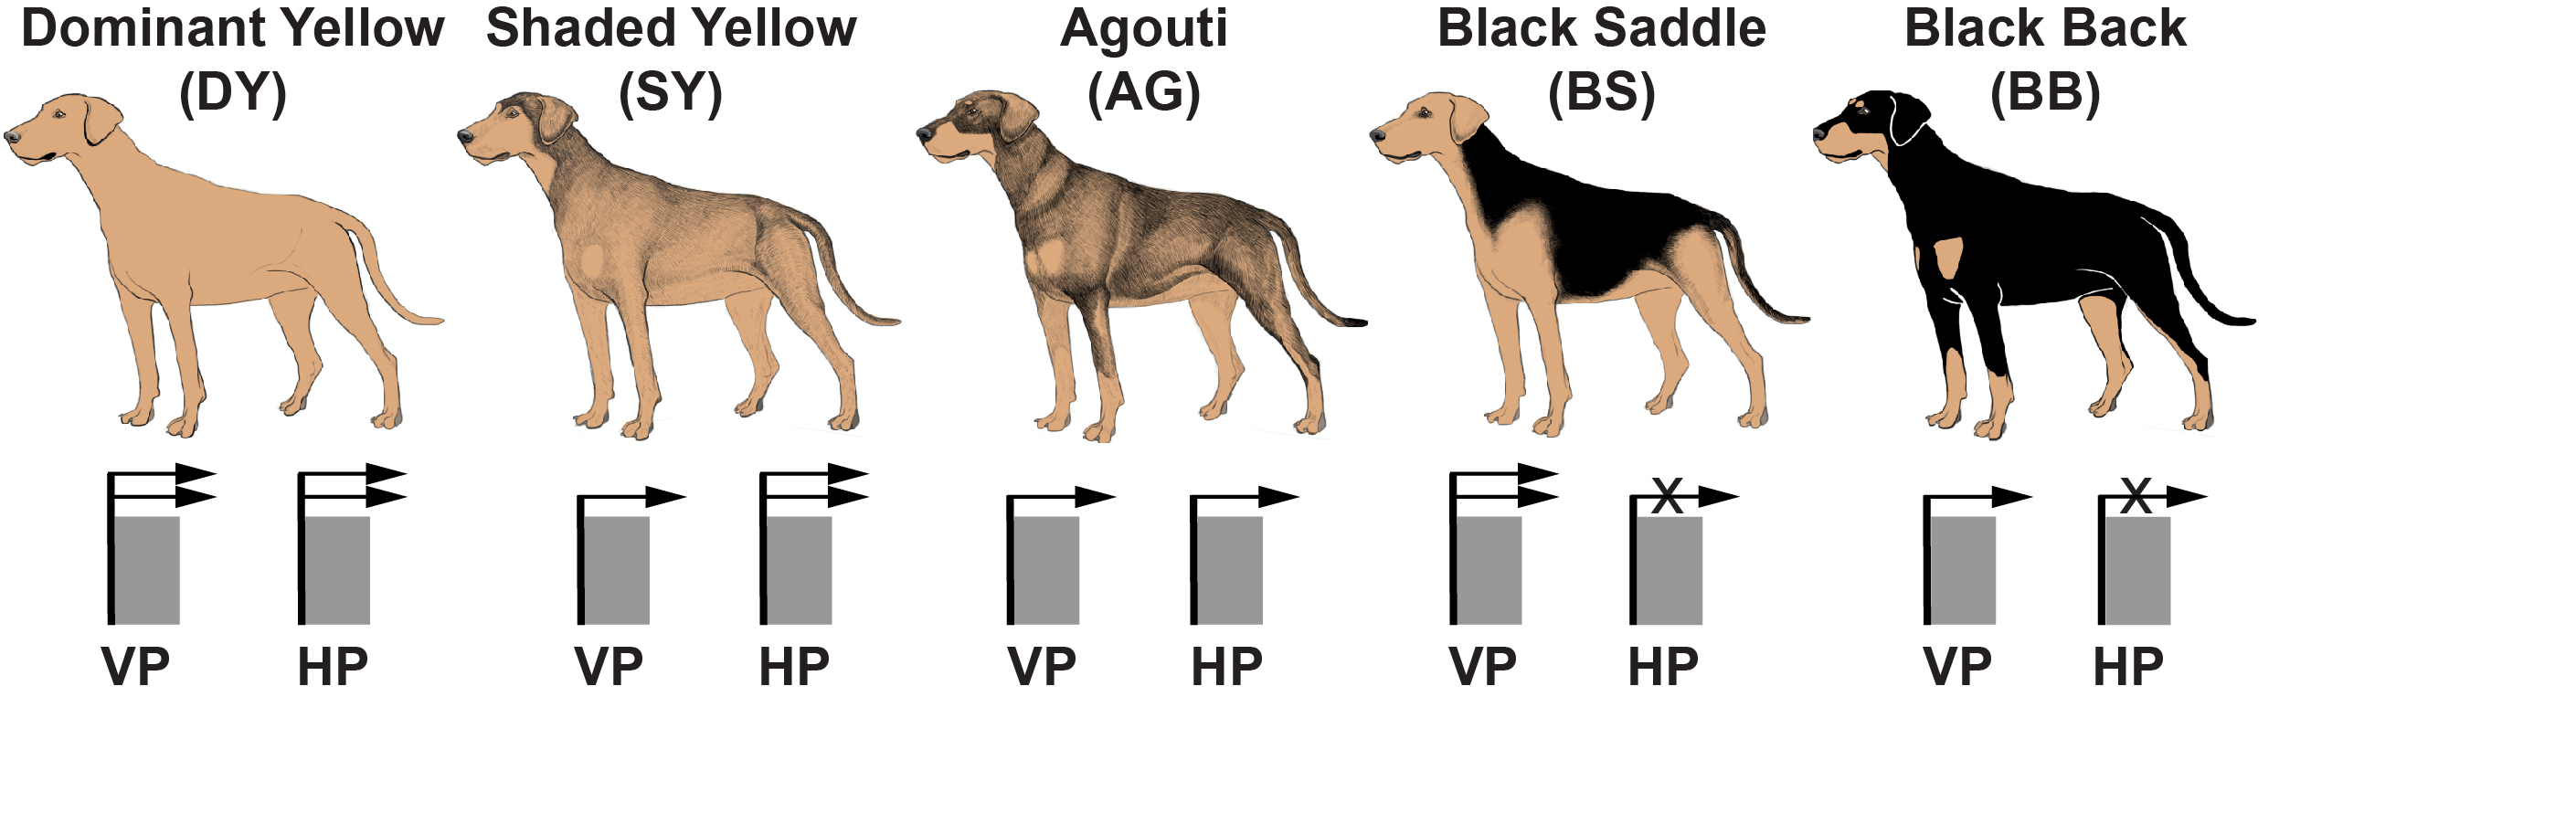 Fünf verschiedenen Farbmuster bei Hunden, die durch Promotorvarianten am Gen für das Agouti-Signalprotein gesteuert werden. Unterhalb der Hunde ist schematisch angedeutet, wie aktiv der ventrale Promoter (VP) oder der Haarzyklus-spezifische Promotor (HP) ist.